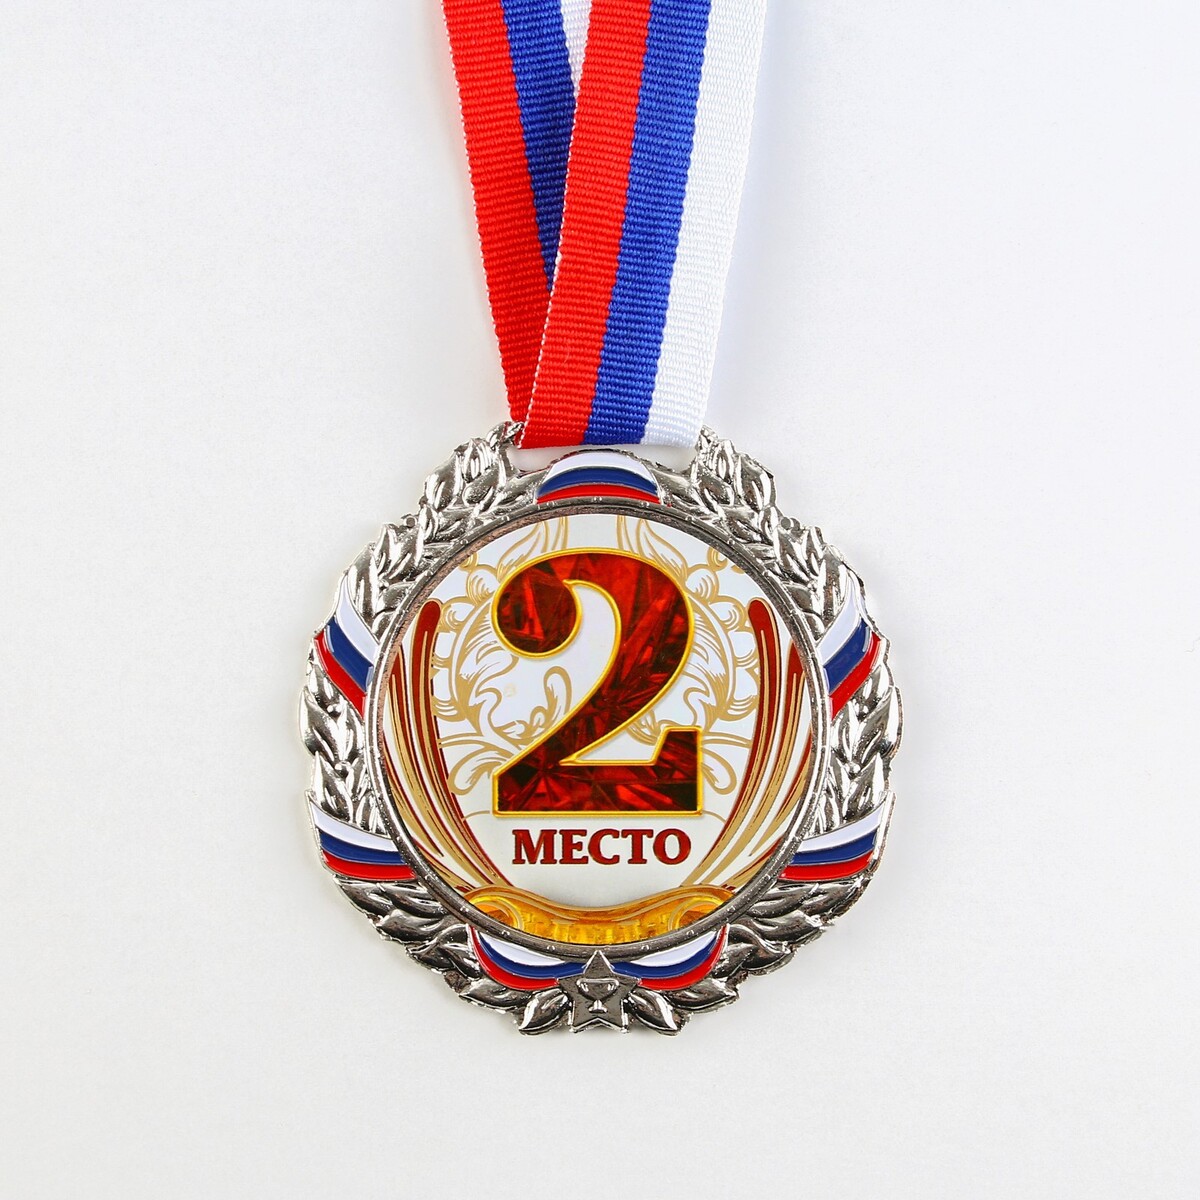 Медаль призовая 075 диам 6,5 см. 2 место, триколор. цвет сер. с лентой монстрам тут не место